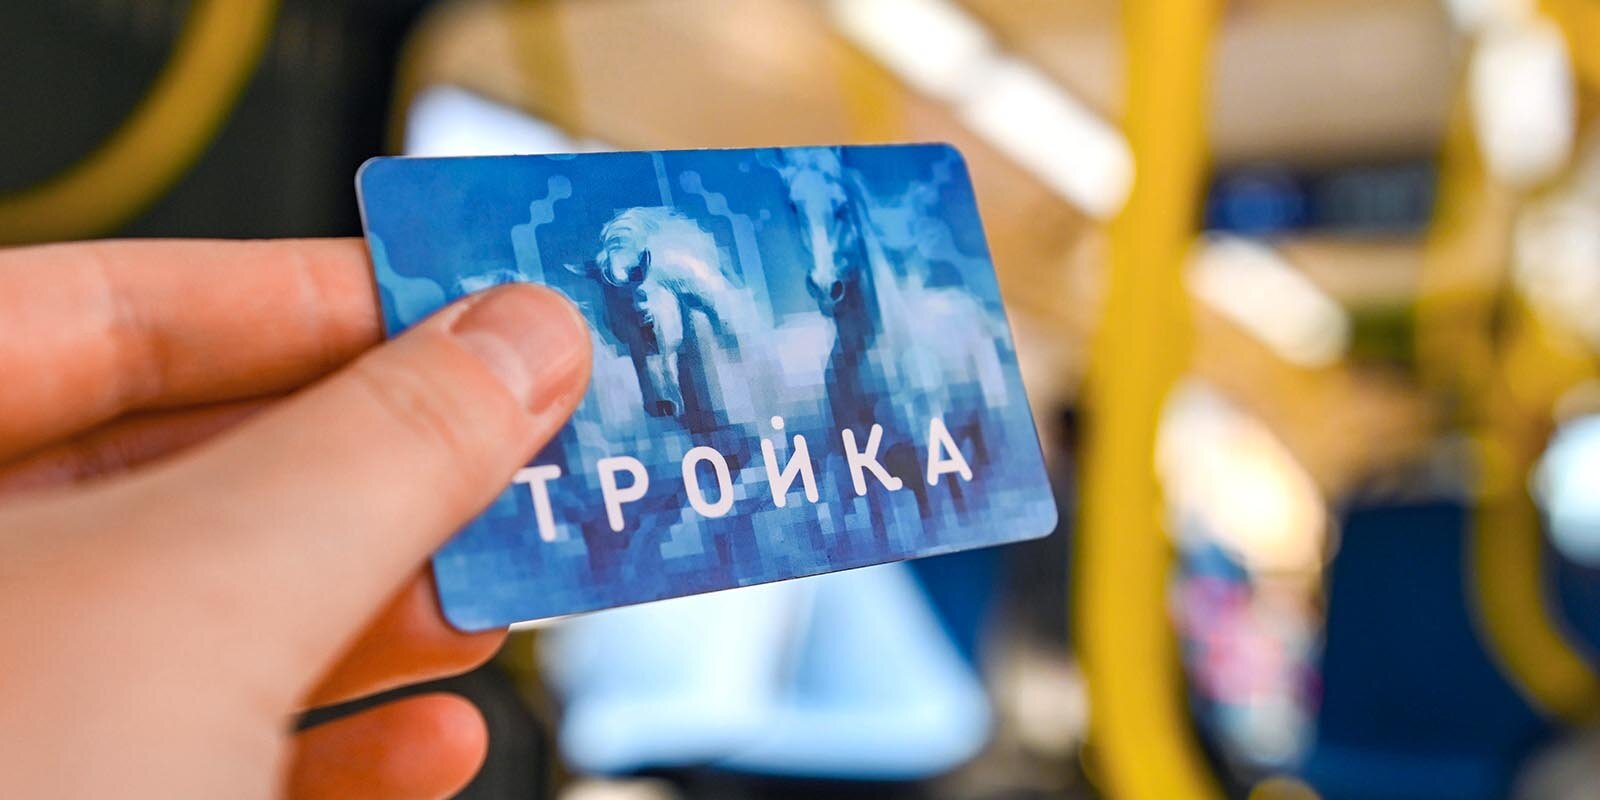 Цены на билеты для проезда в московском транспорте выросли с воскресенья